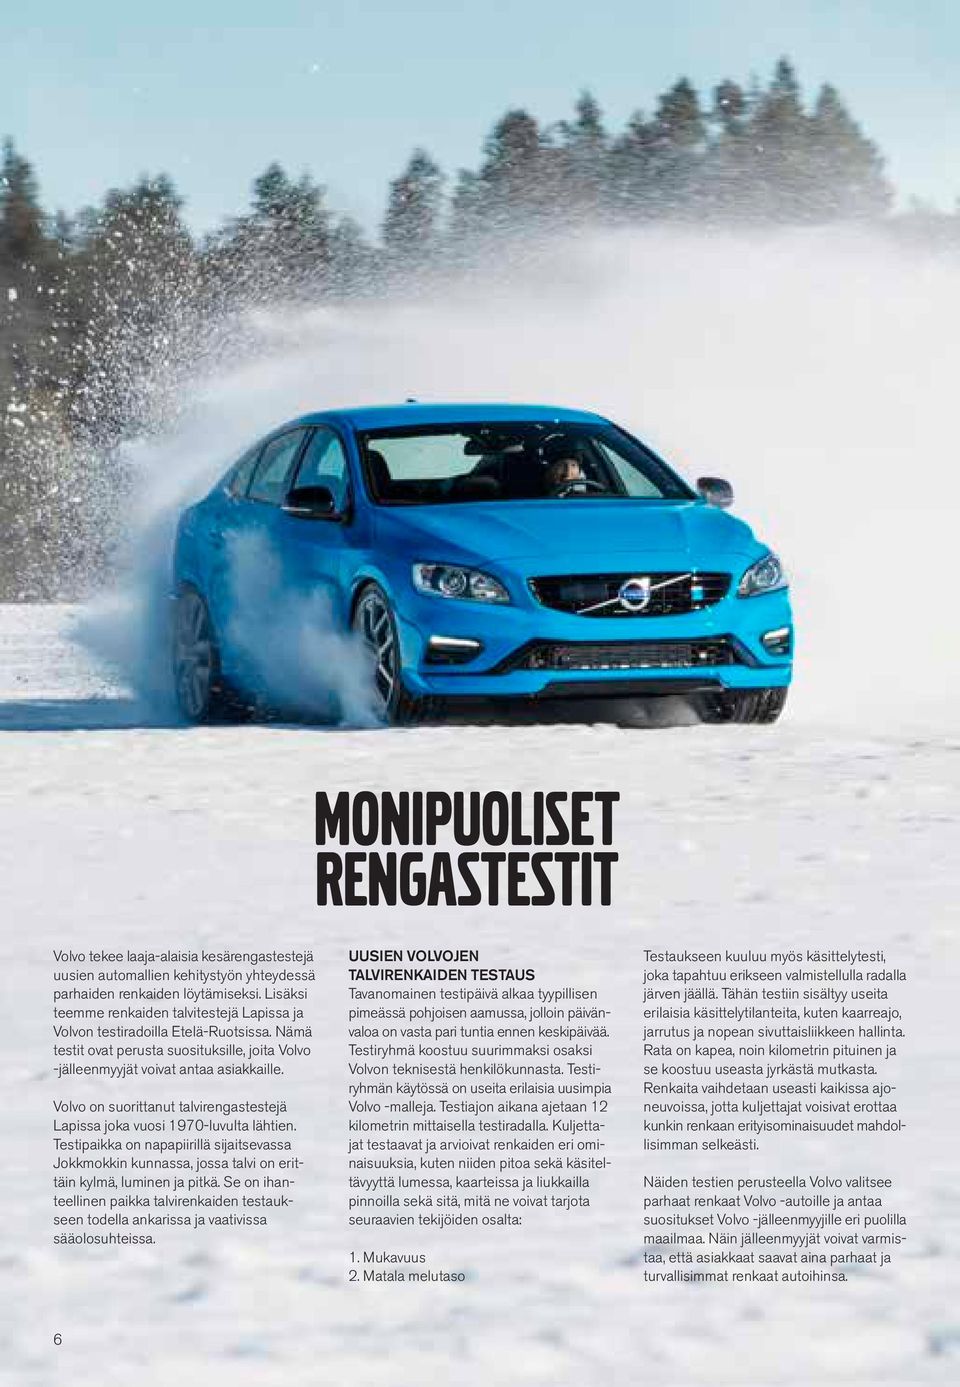 Volvo on suorittanut talvirengastestejä Lapissa joka vuosi 1970-luvulta lähtien. Testipaikka on napapiirillä sijaitsevassa Jokkmokkin kunnassa, jossa talvi on erittäin kylmä, luminen ja pitkä.